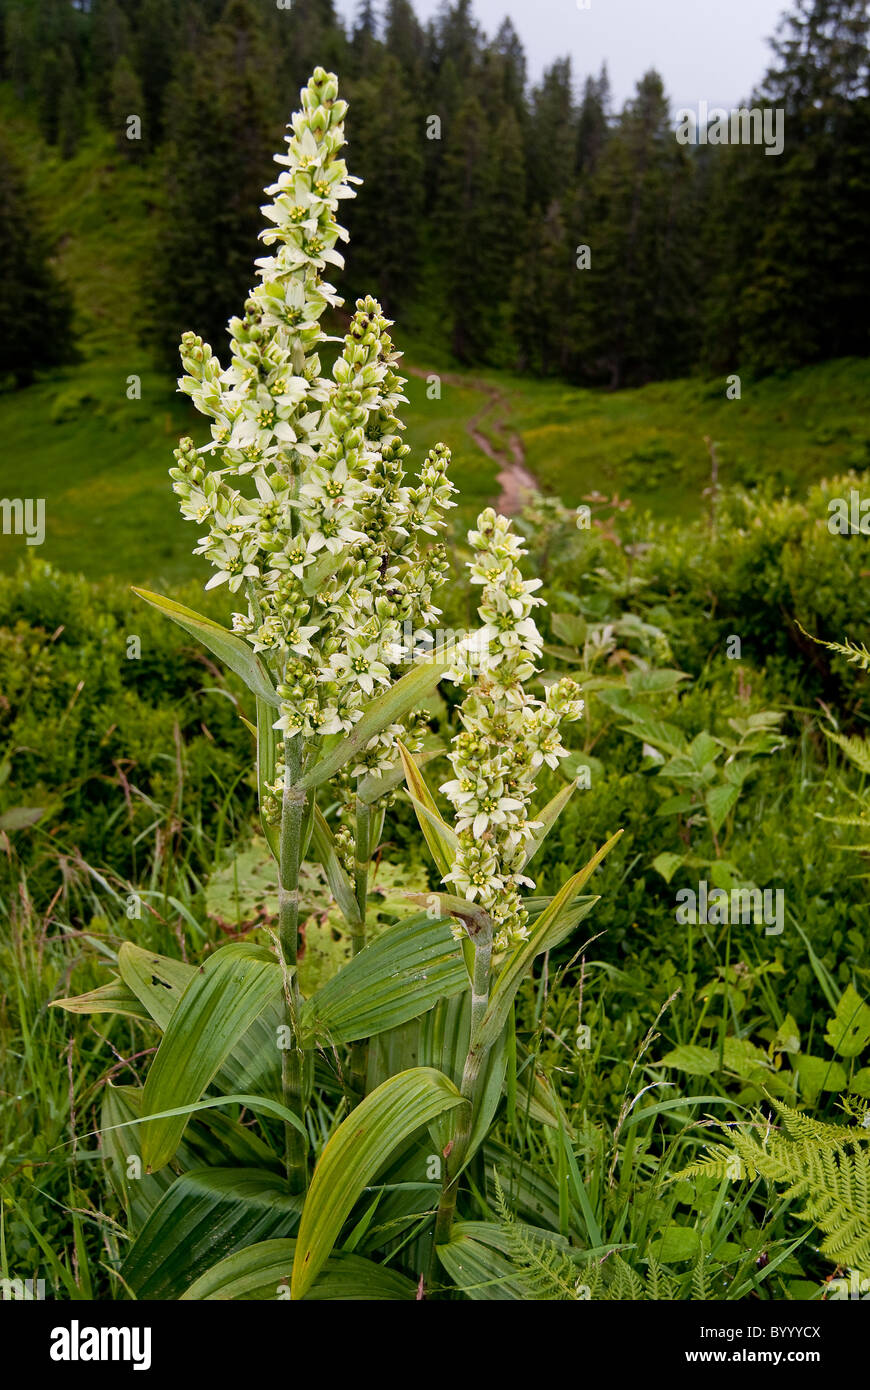 Veratrum bianco (Veratrum album), la fioritura delle piante. Foto Stock